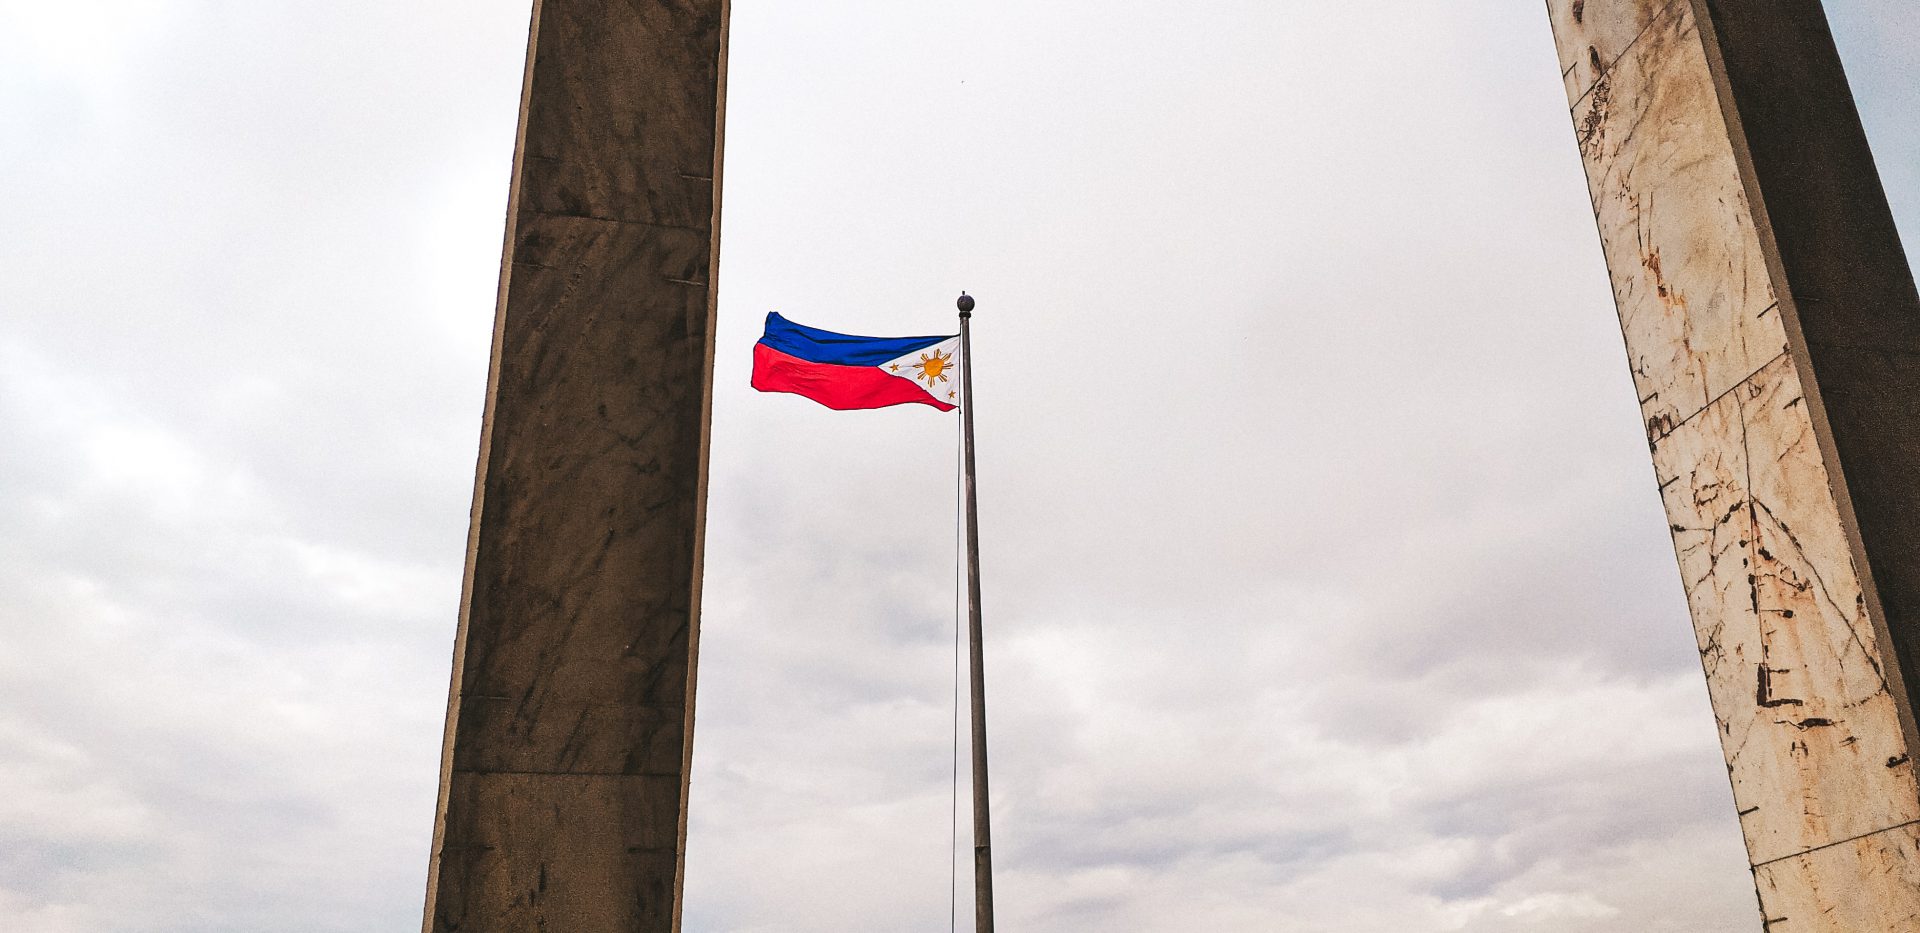 فیلیپین به زودی می تواند از استیبل کوین ها برای پرداخت های فرامرزی استفاده کند